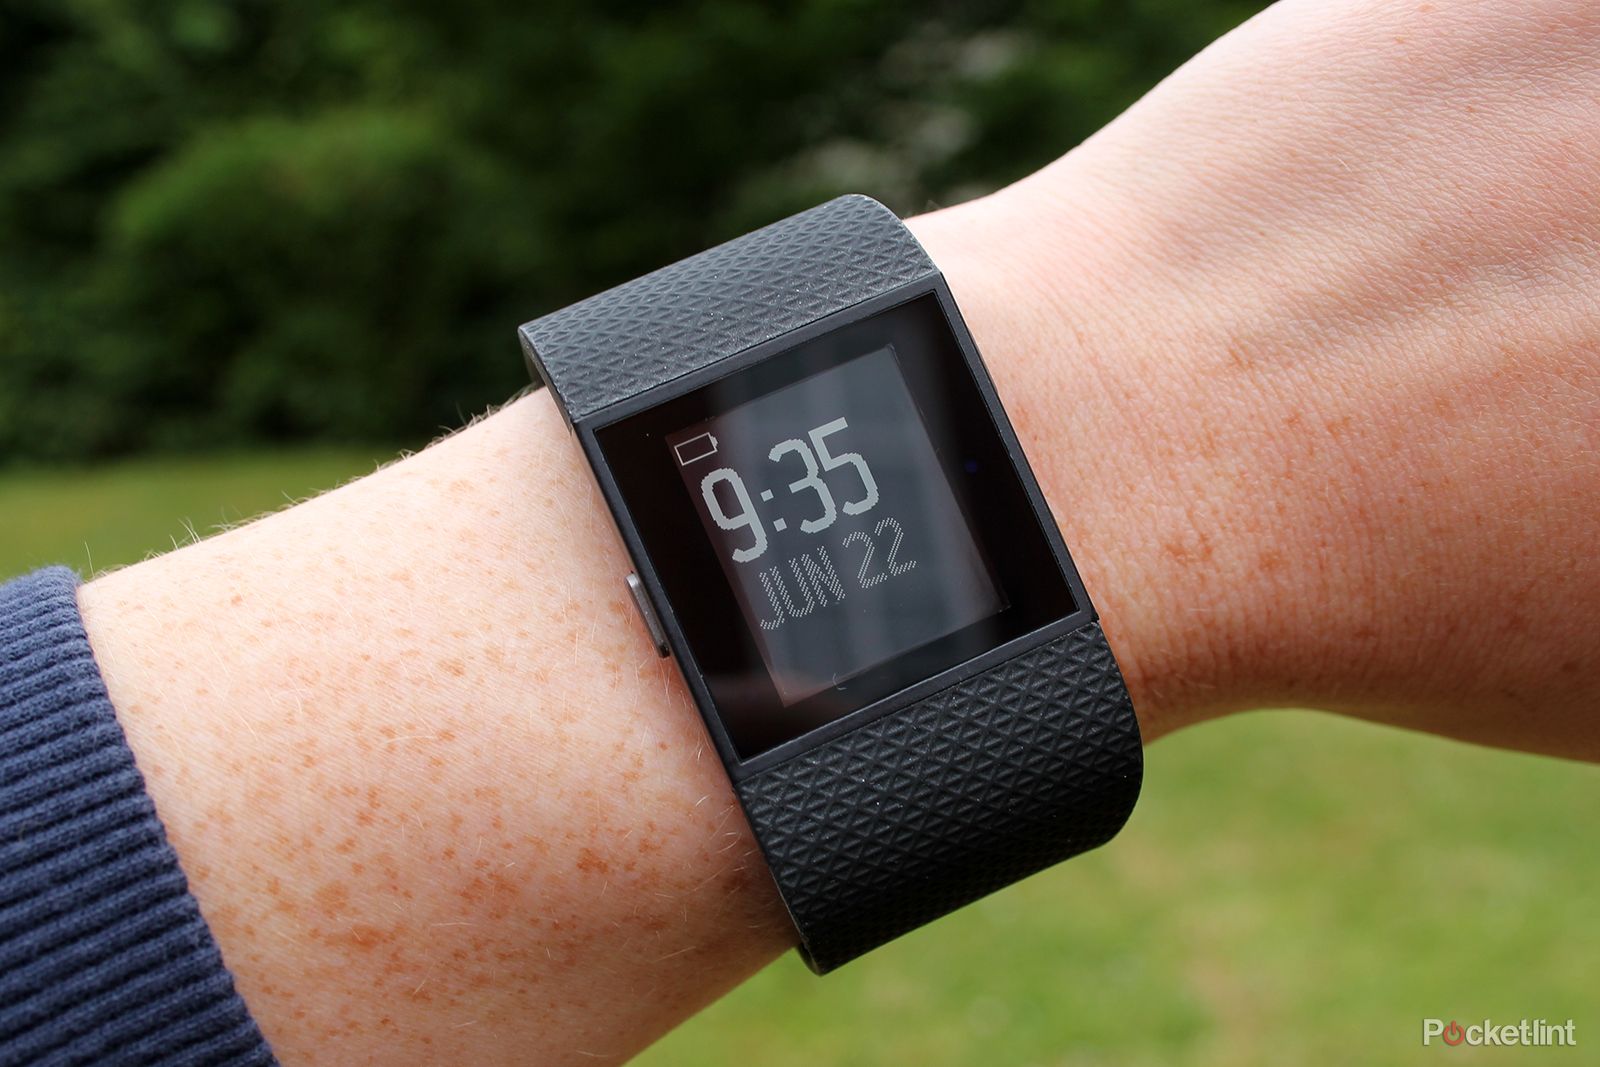 Montre Sport Fitbit Cardio + GPS Surge Noir Taille S - Bracelet